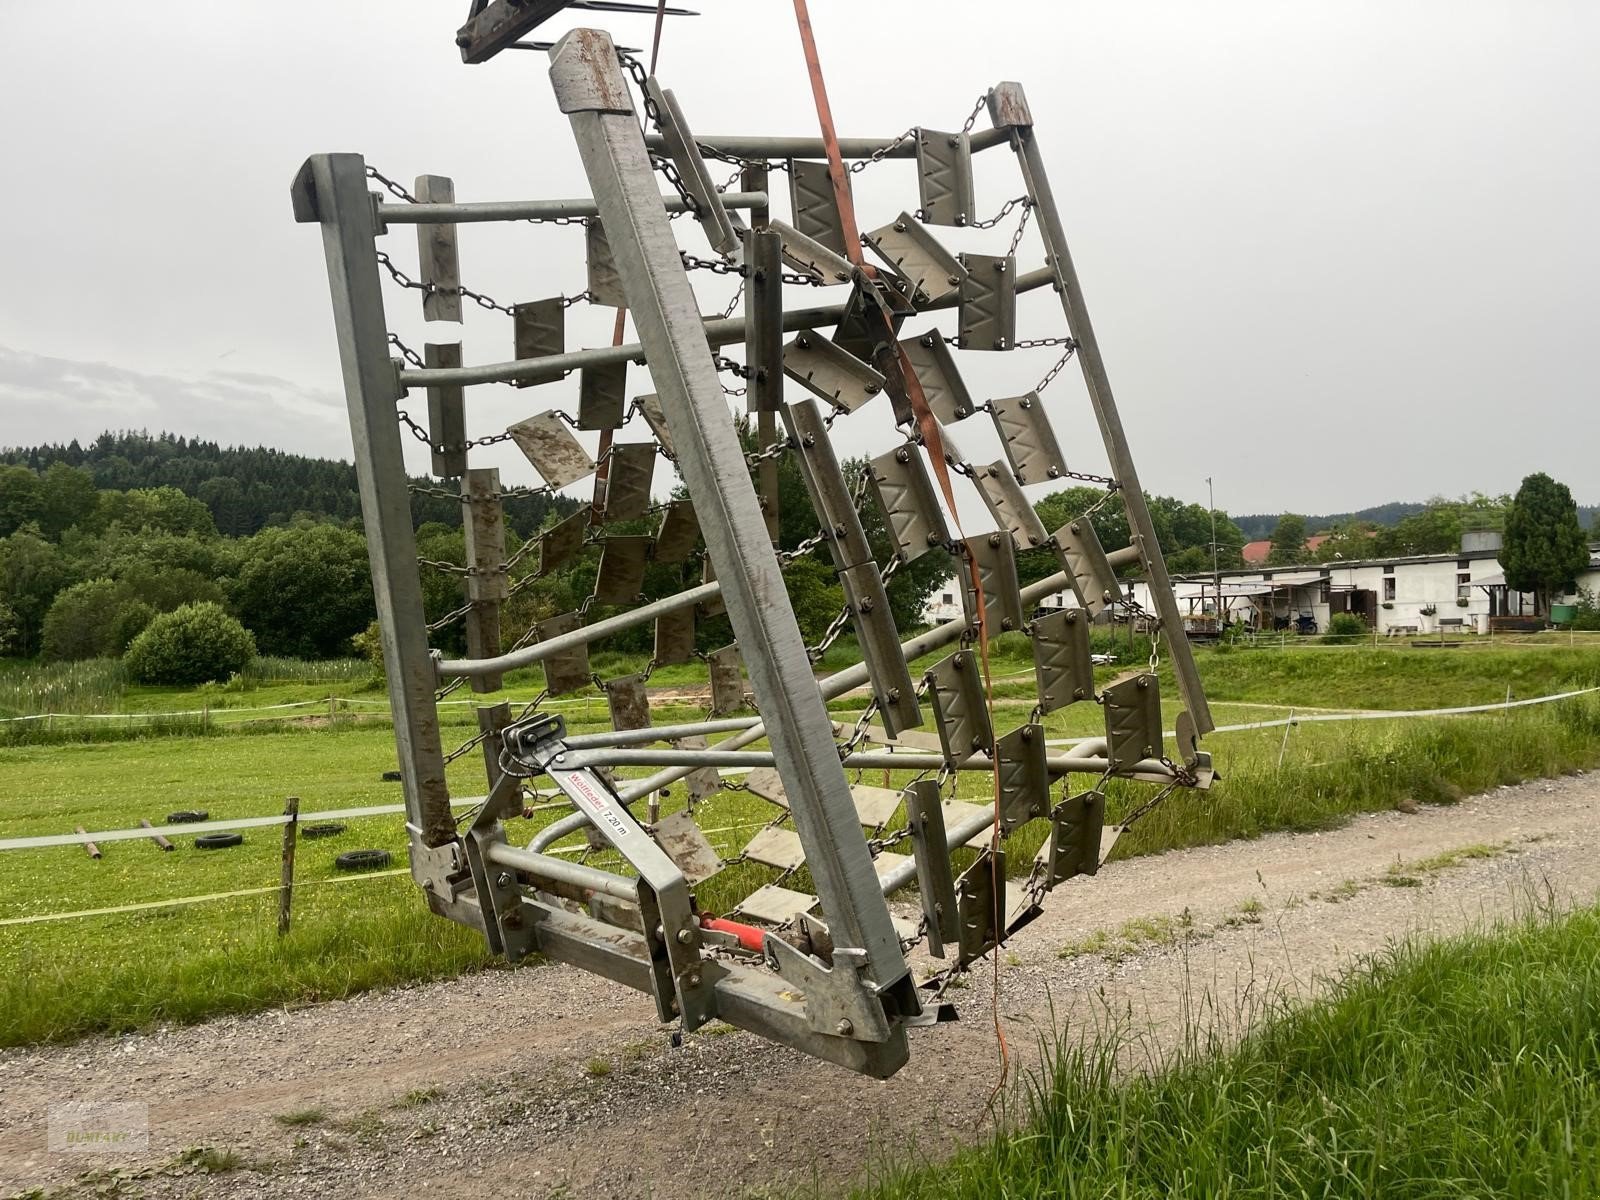 Wiesenegge des Typs Wölfleder WE 7,2 hk, Gebrauchtmaschine in Bad Leonfelden (Bild 5)